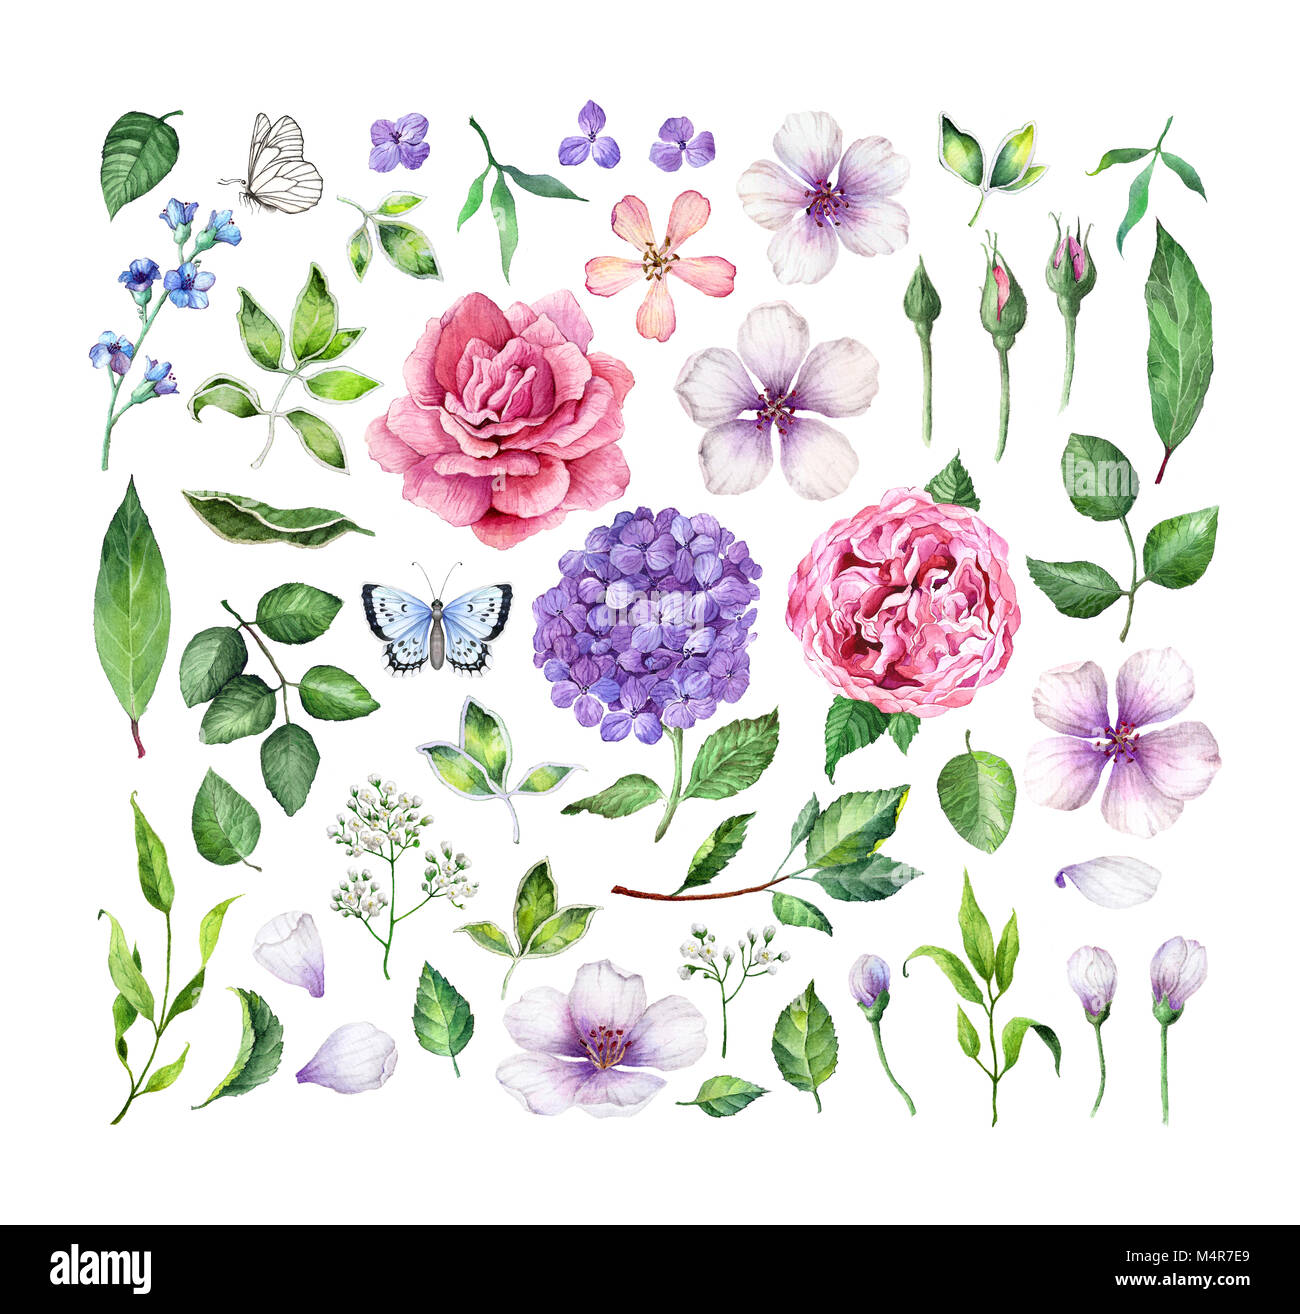 Grande série de fleurs (roses, hortensia, fleurs de pommier), des feuilles, des pétales et papillons isolé sur fond blanc. Aquarelle Art illustration. Banque D'Images